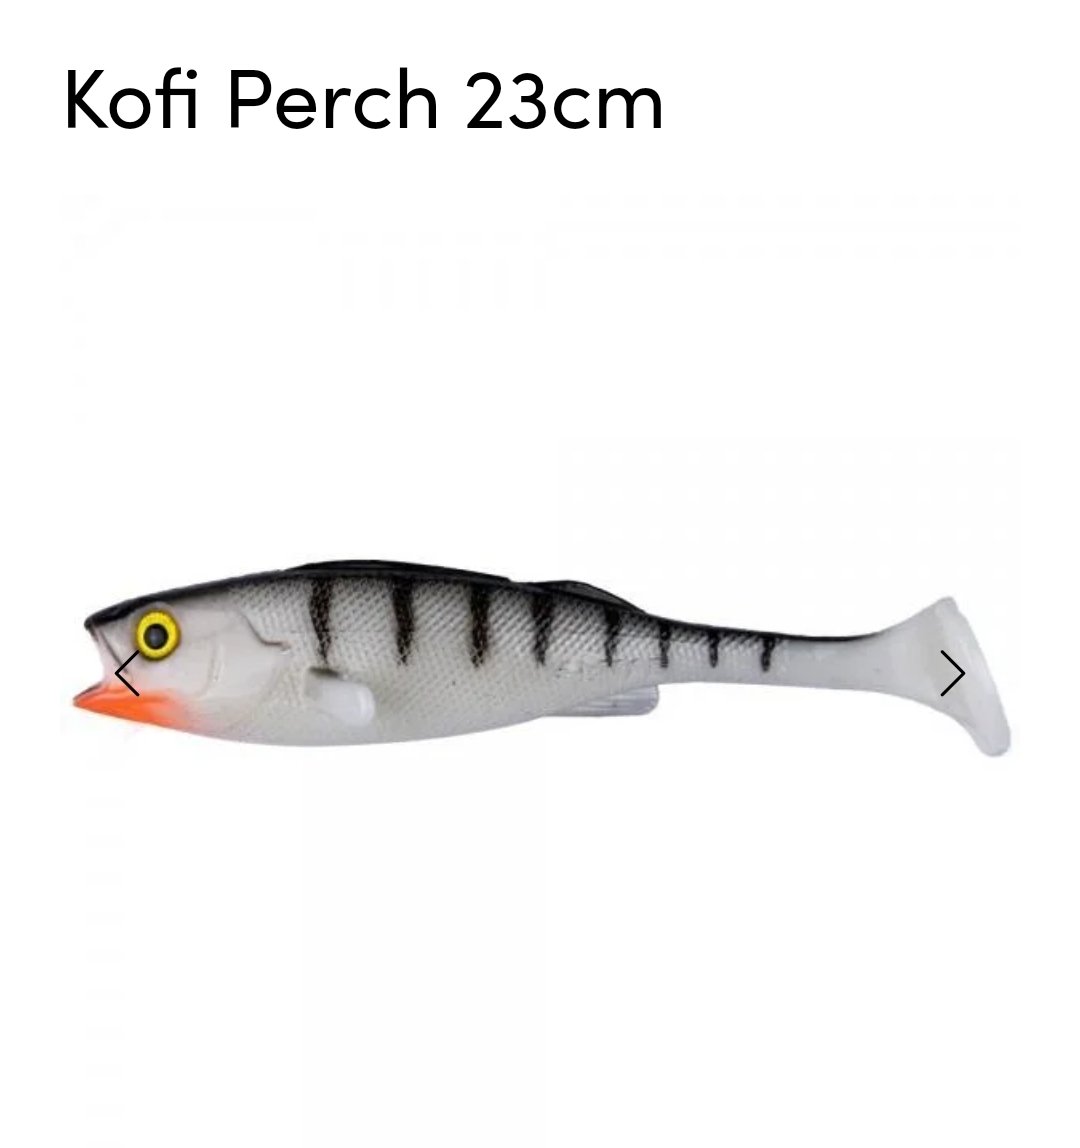 Kofi Perch 23cm - White Perch